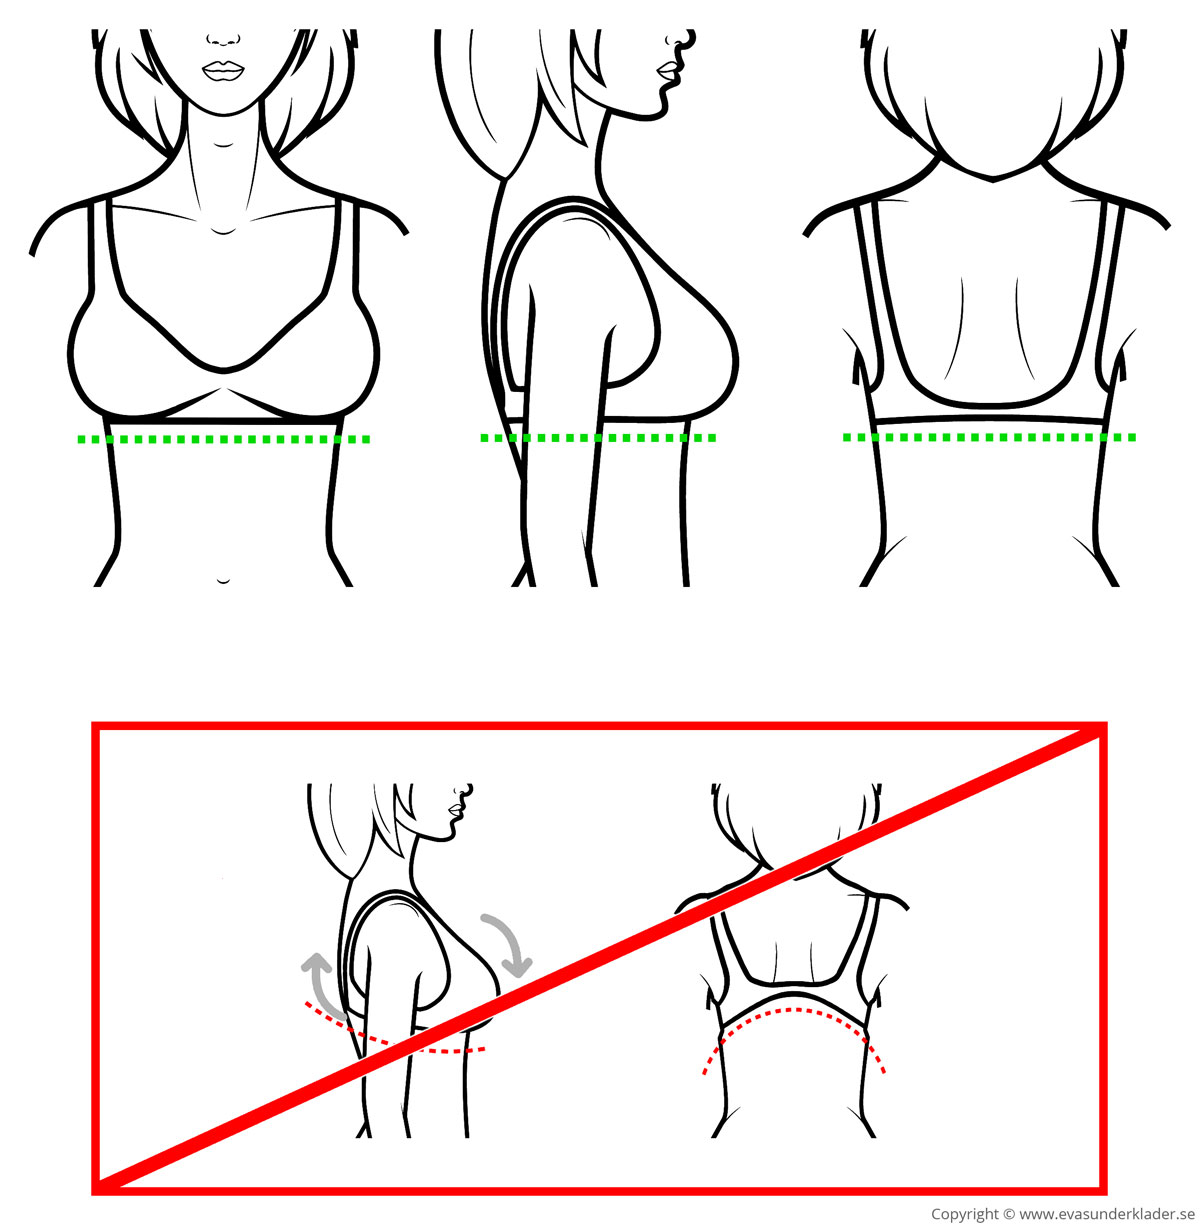 Hur ryggband ska sitta (övre bildraden) och inte ska sitta på kroppen (nedre bildraden).